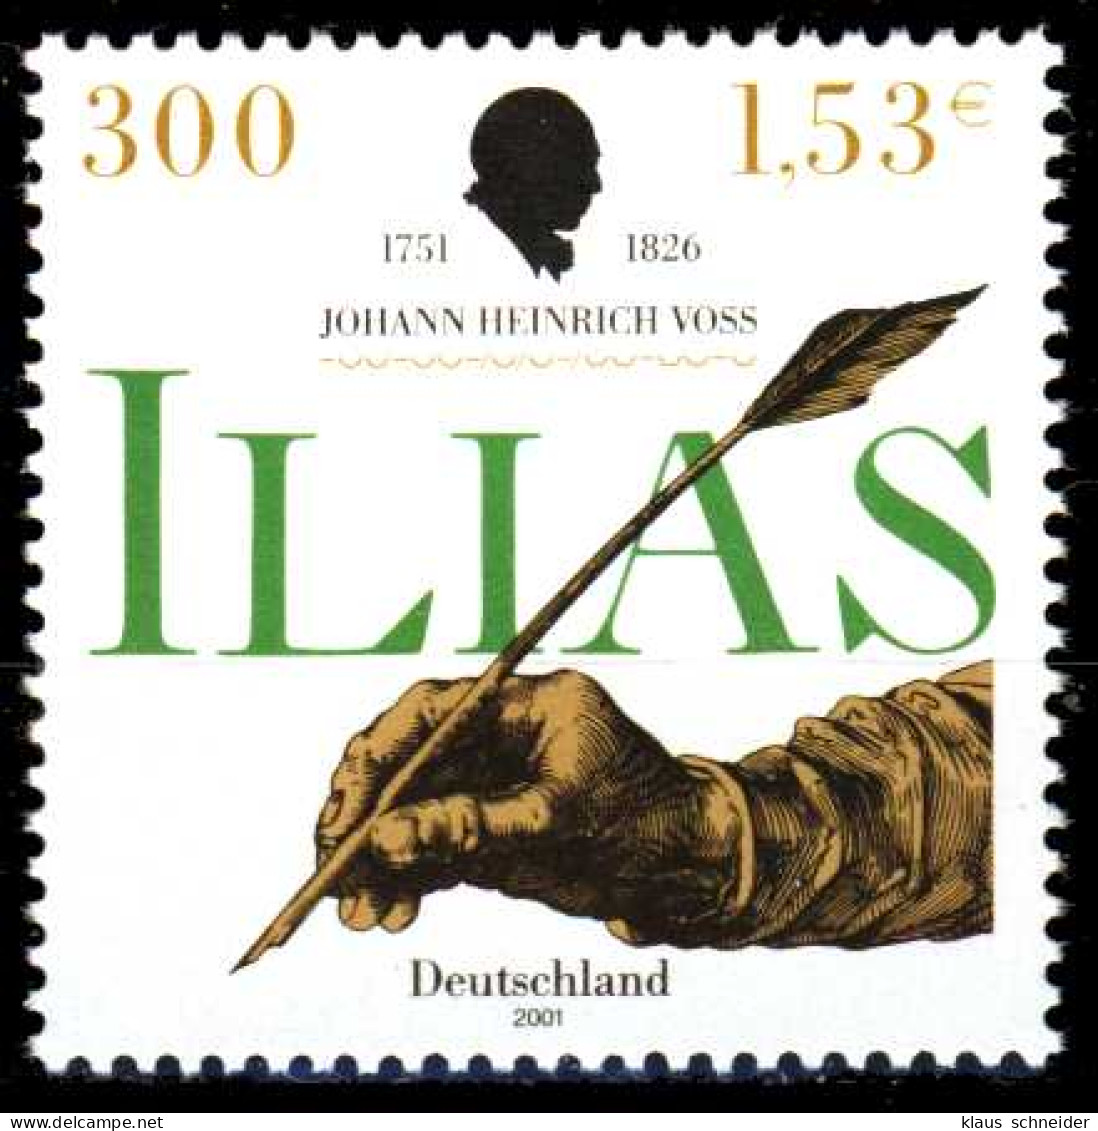 BRD BUND 2001 Nr 2170 Postfrisch SE194A6 - Unused Stamps